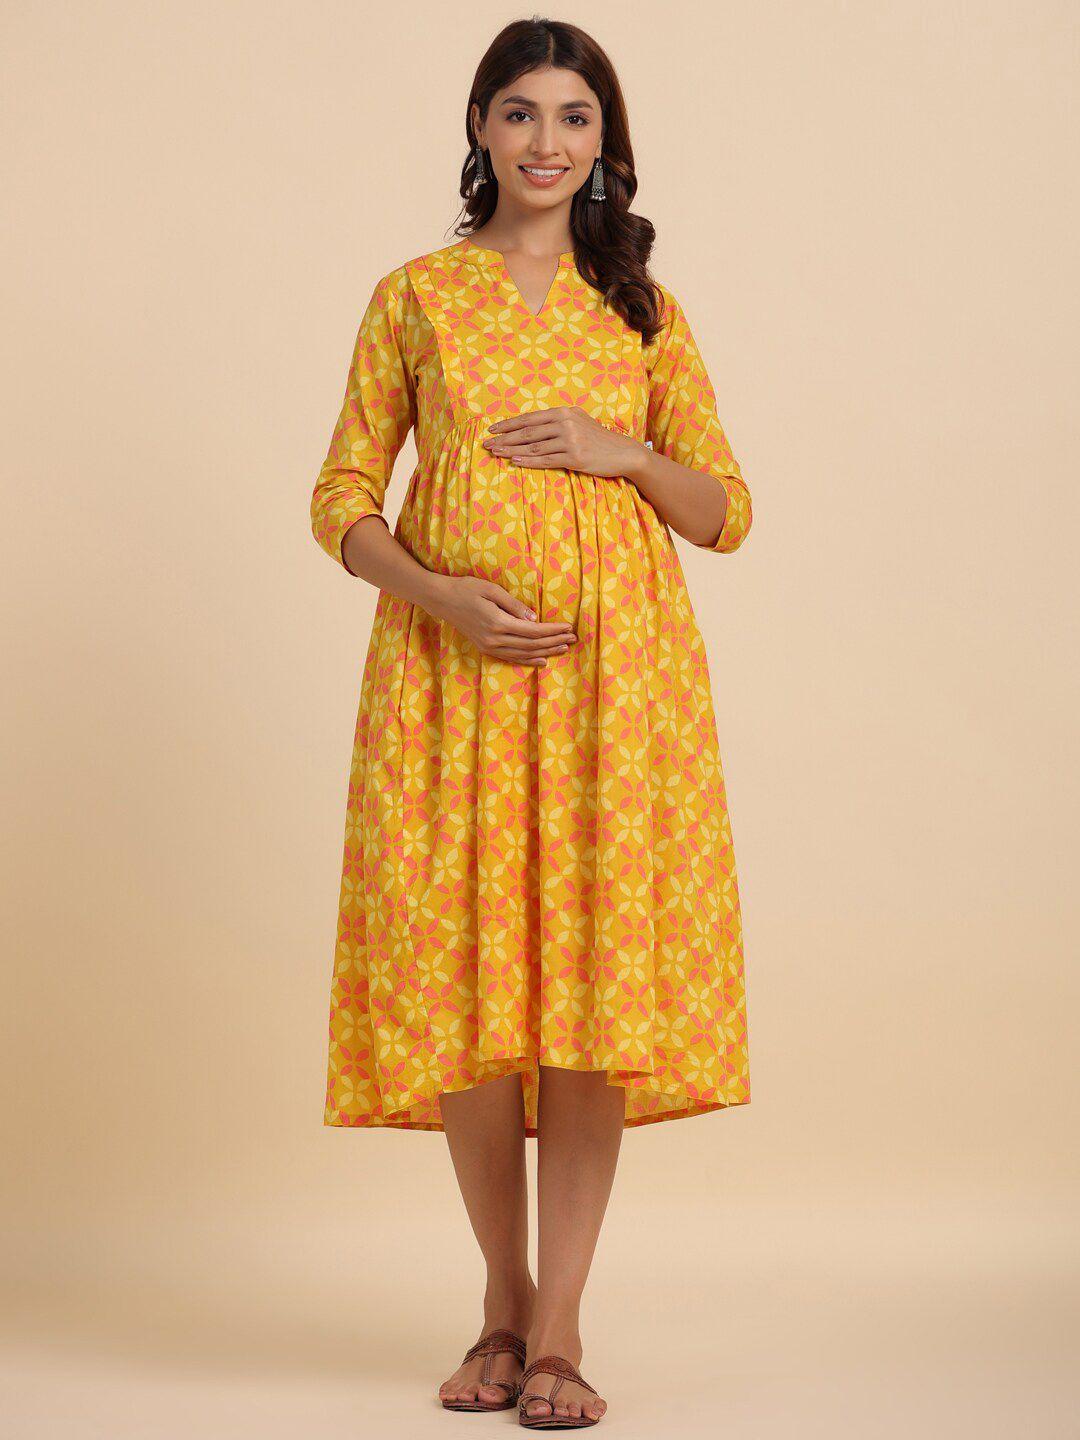 crafiqa mustard yellow floral print maternity fit & flare midi dress